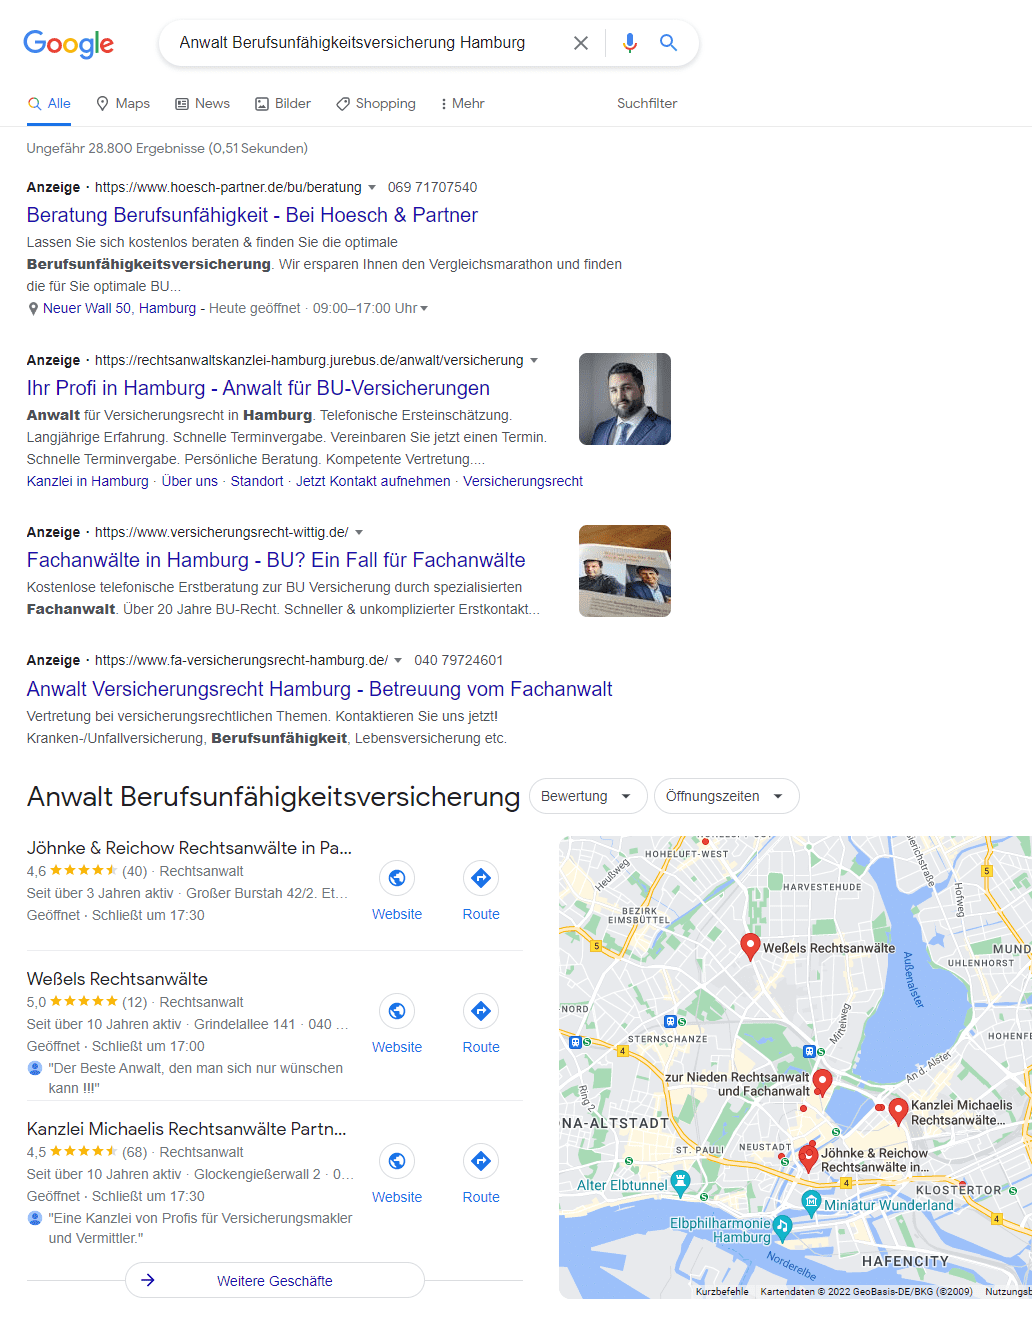 Suchen Sie nicht irgendeinen Rechtsanwalt zum Thema Berufsunfähigkeit in Hamburg - nutzen Sie Empfehlung ausgewiesener Experten von der Deutschen Schadenshilfe (Screenshot Google Suche nach -- Anwalt Berufsunfähigkeitsversicherung Hamburg -- am 10.06.2022)